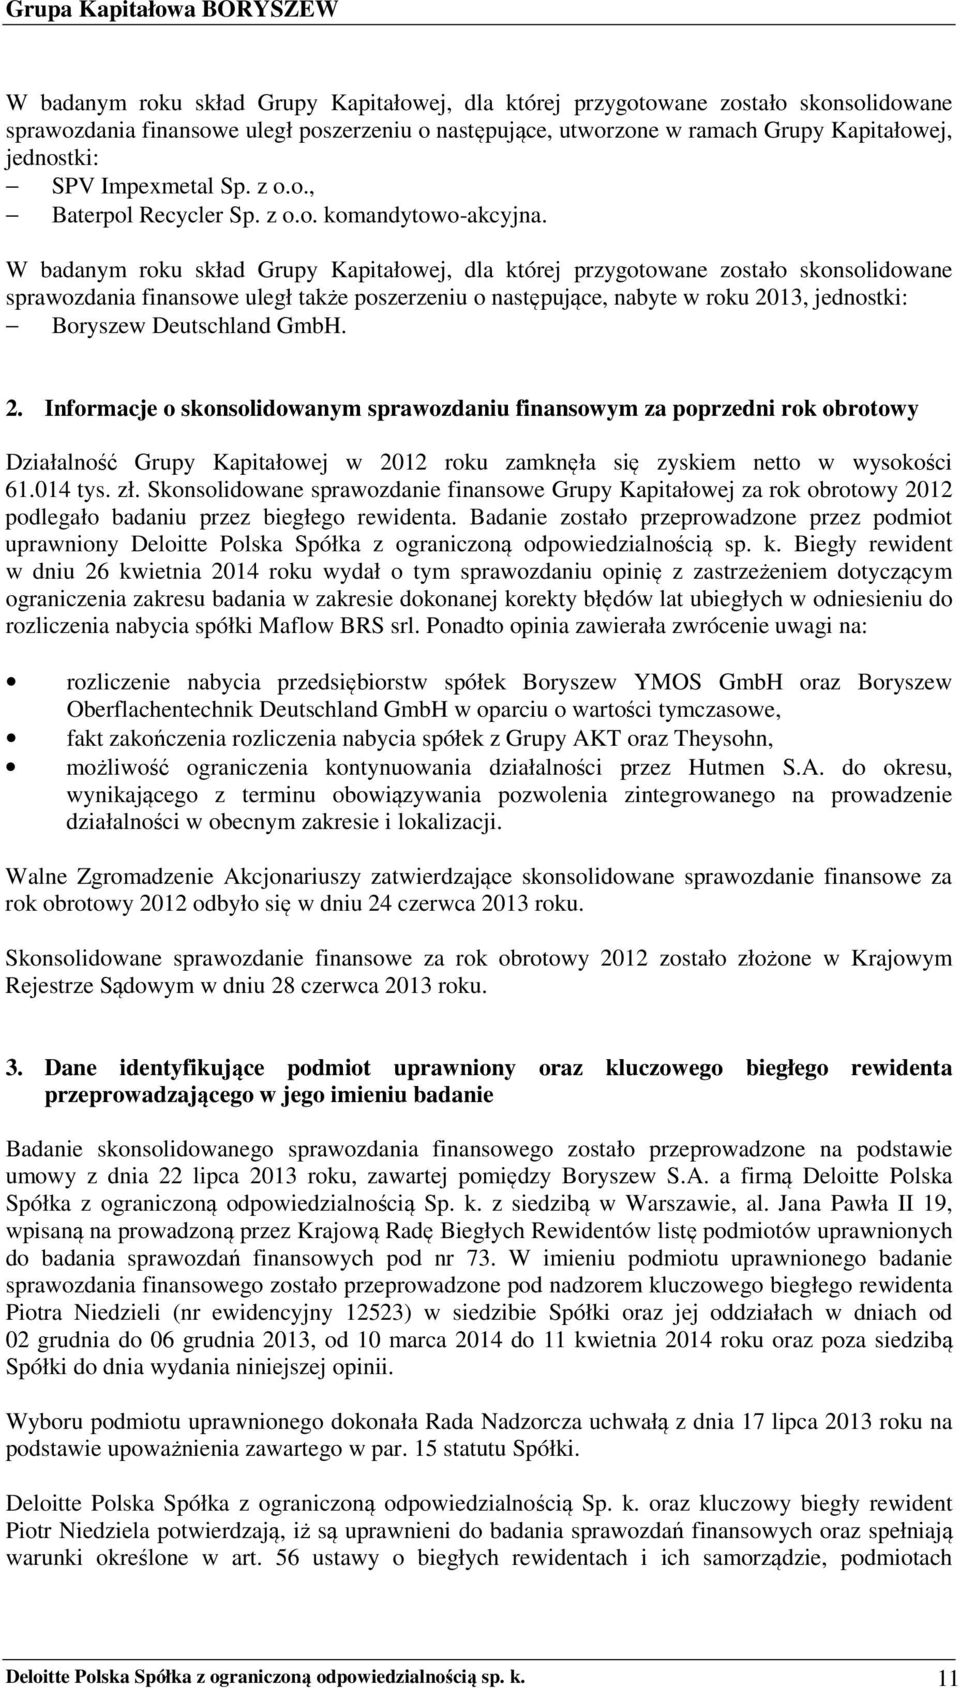 W badanym roku skład Grupy Kapitałowej, dla której przygotowane zostało skonsolidowane sprawozdania finansowe uległ także poszerzeniu o następujące, nabyte w roku 2013, jednostki: Boryszew